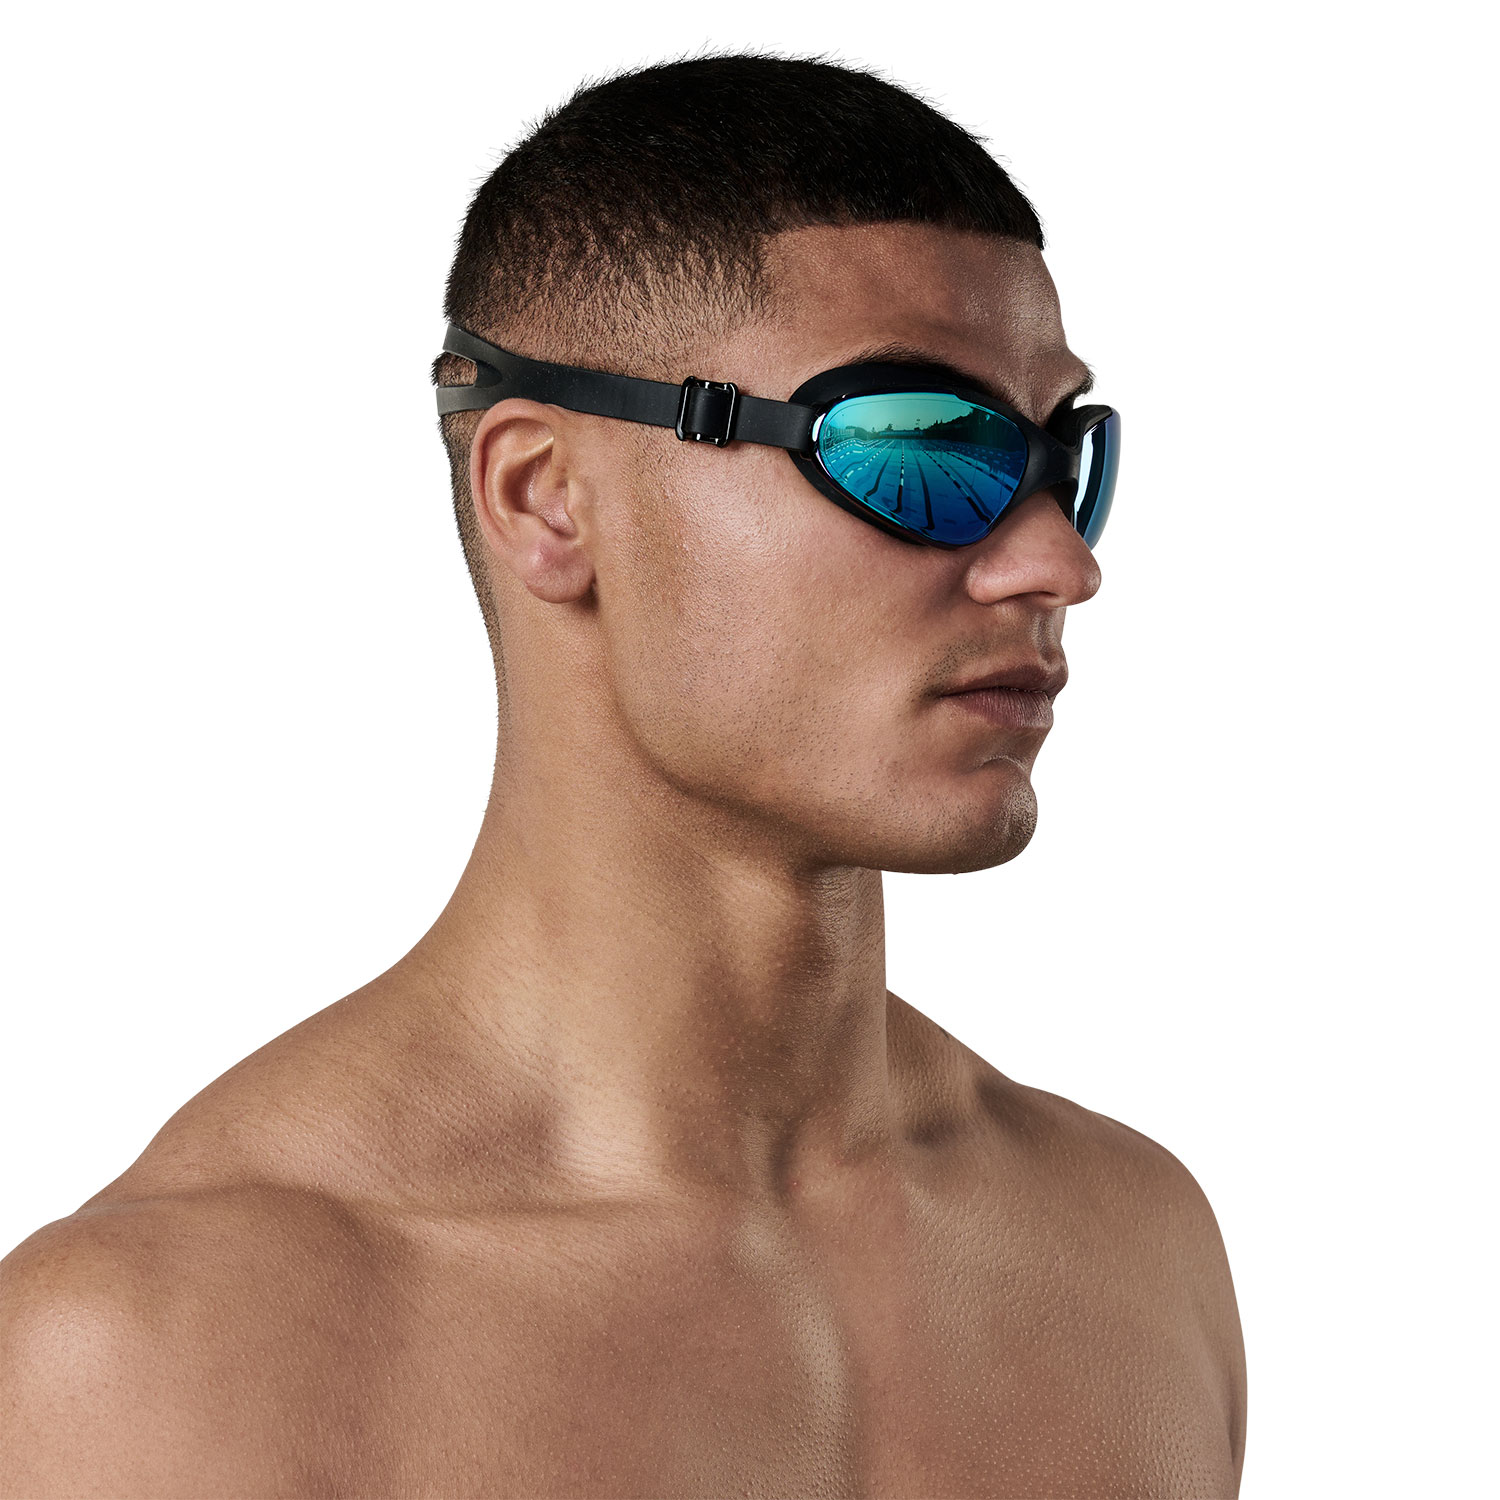 Sutton Swimwear SURF swimming goggles including prescription lenses